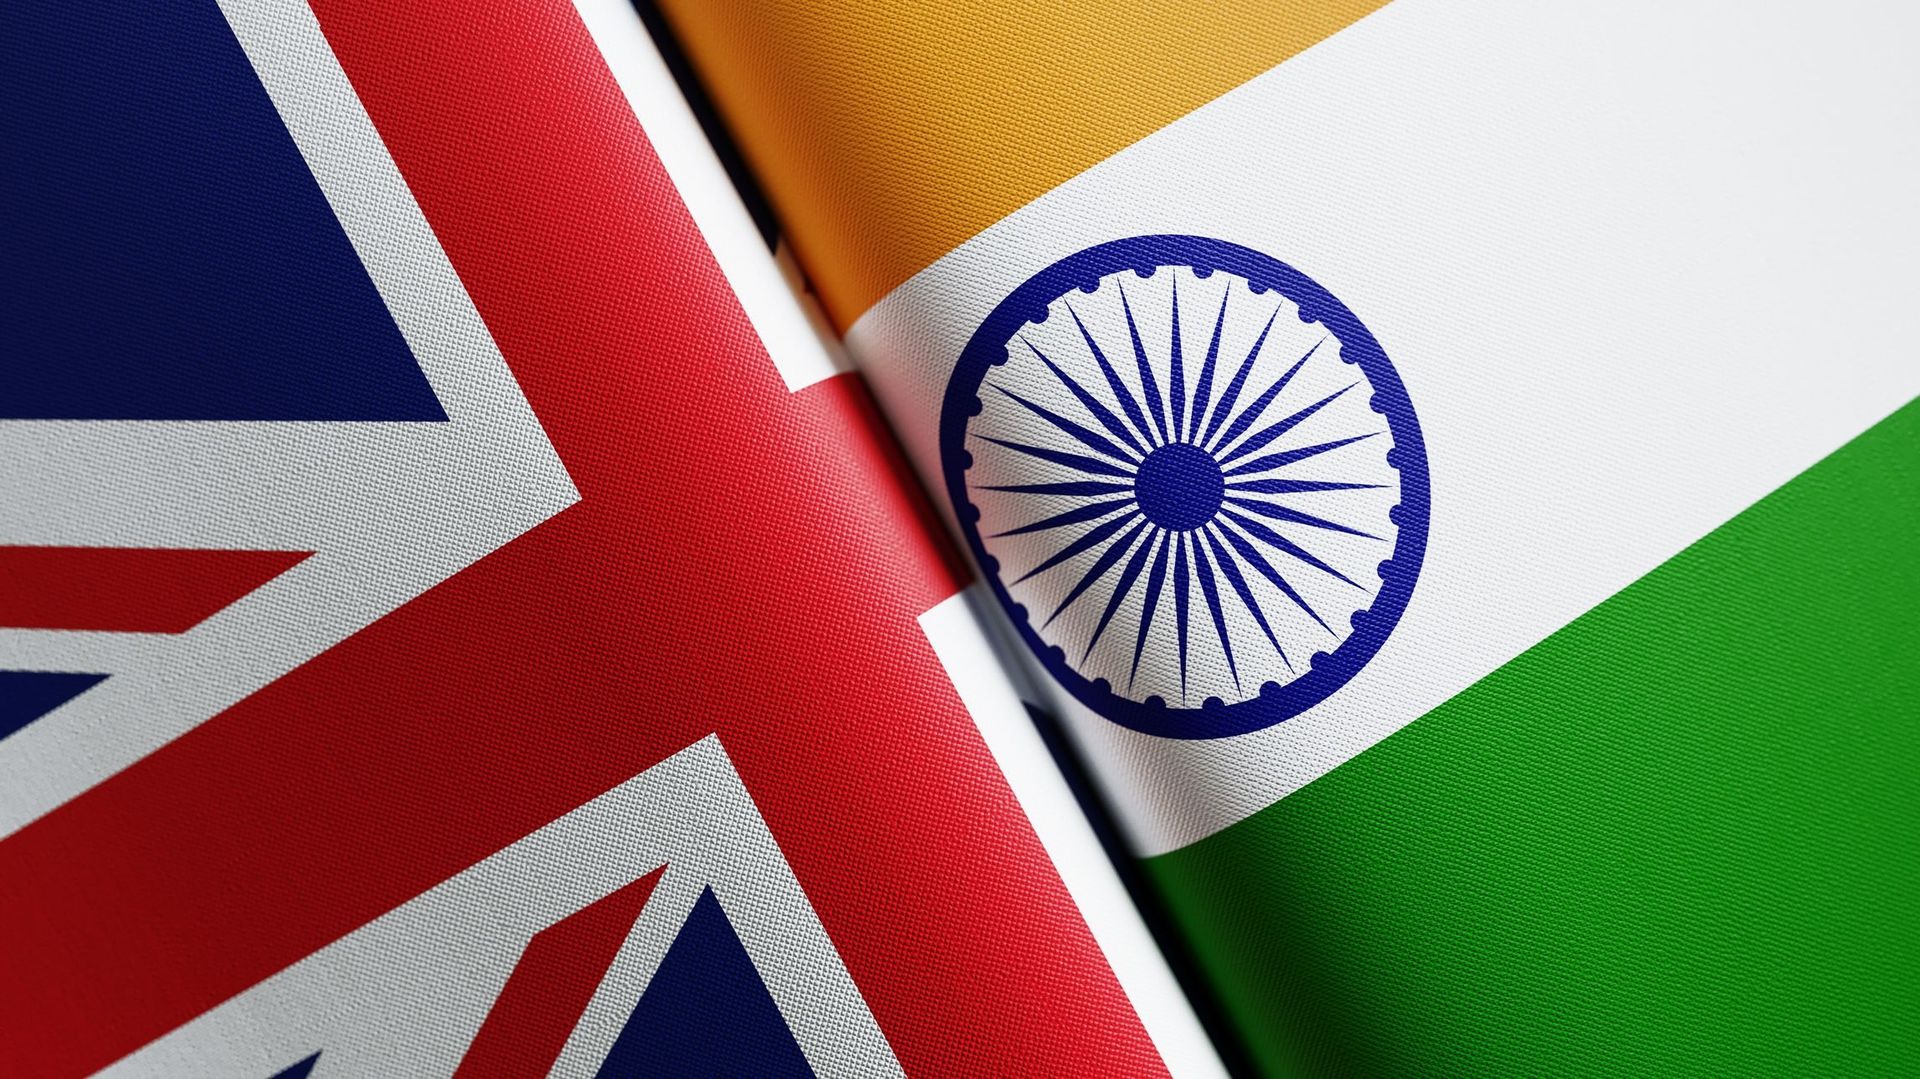 Drapeaux indien et britannique, image d’illustration